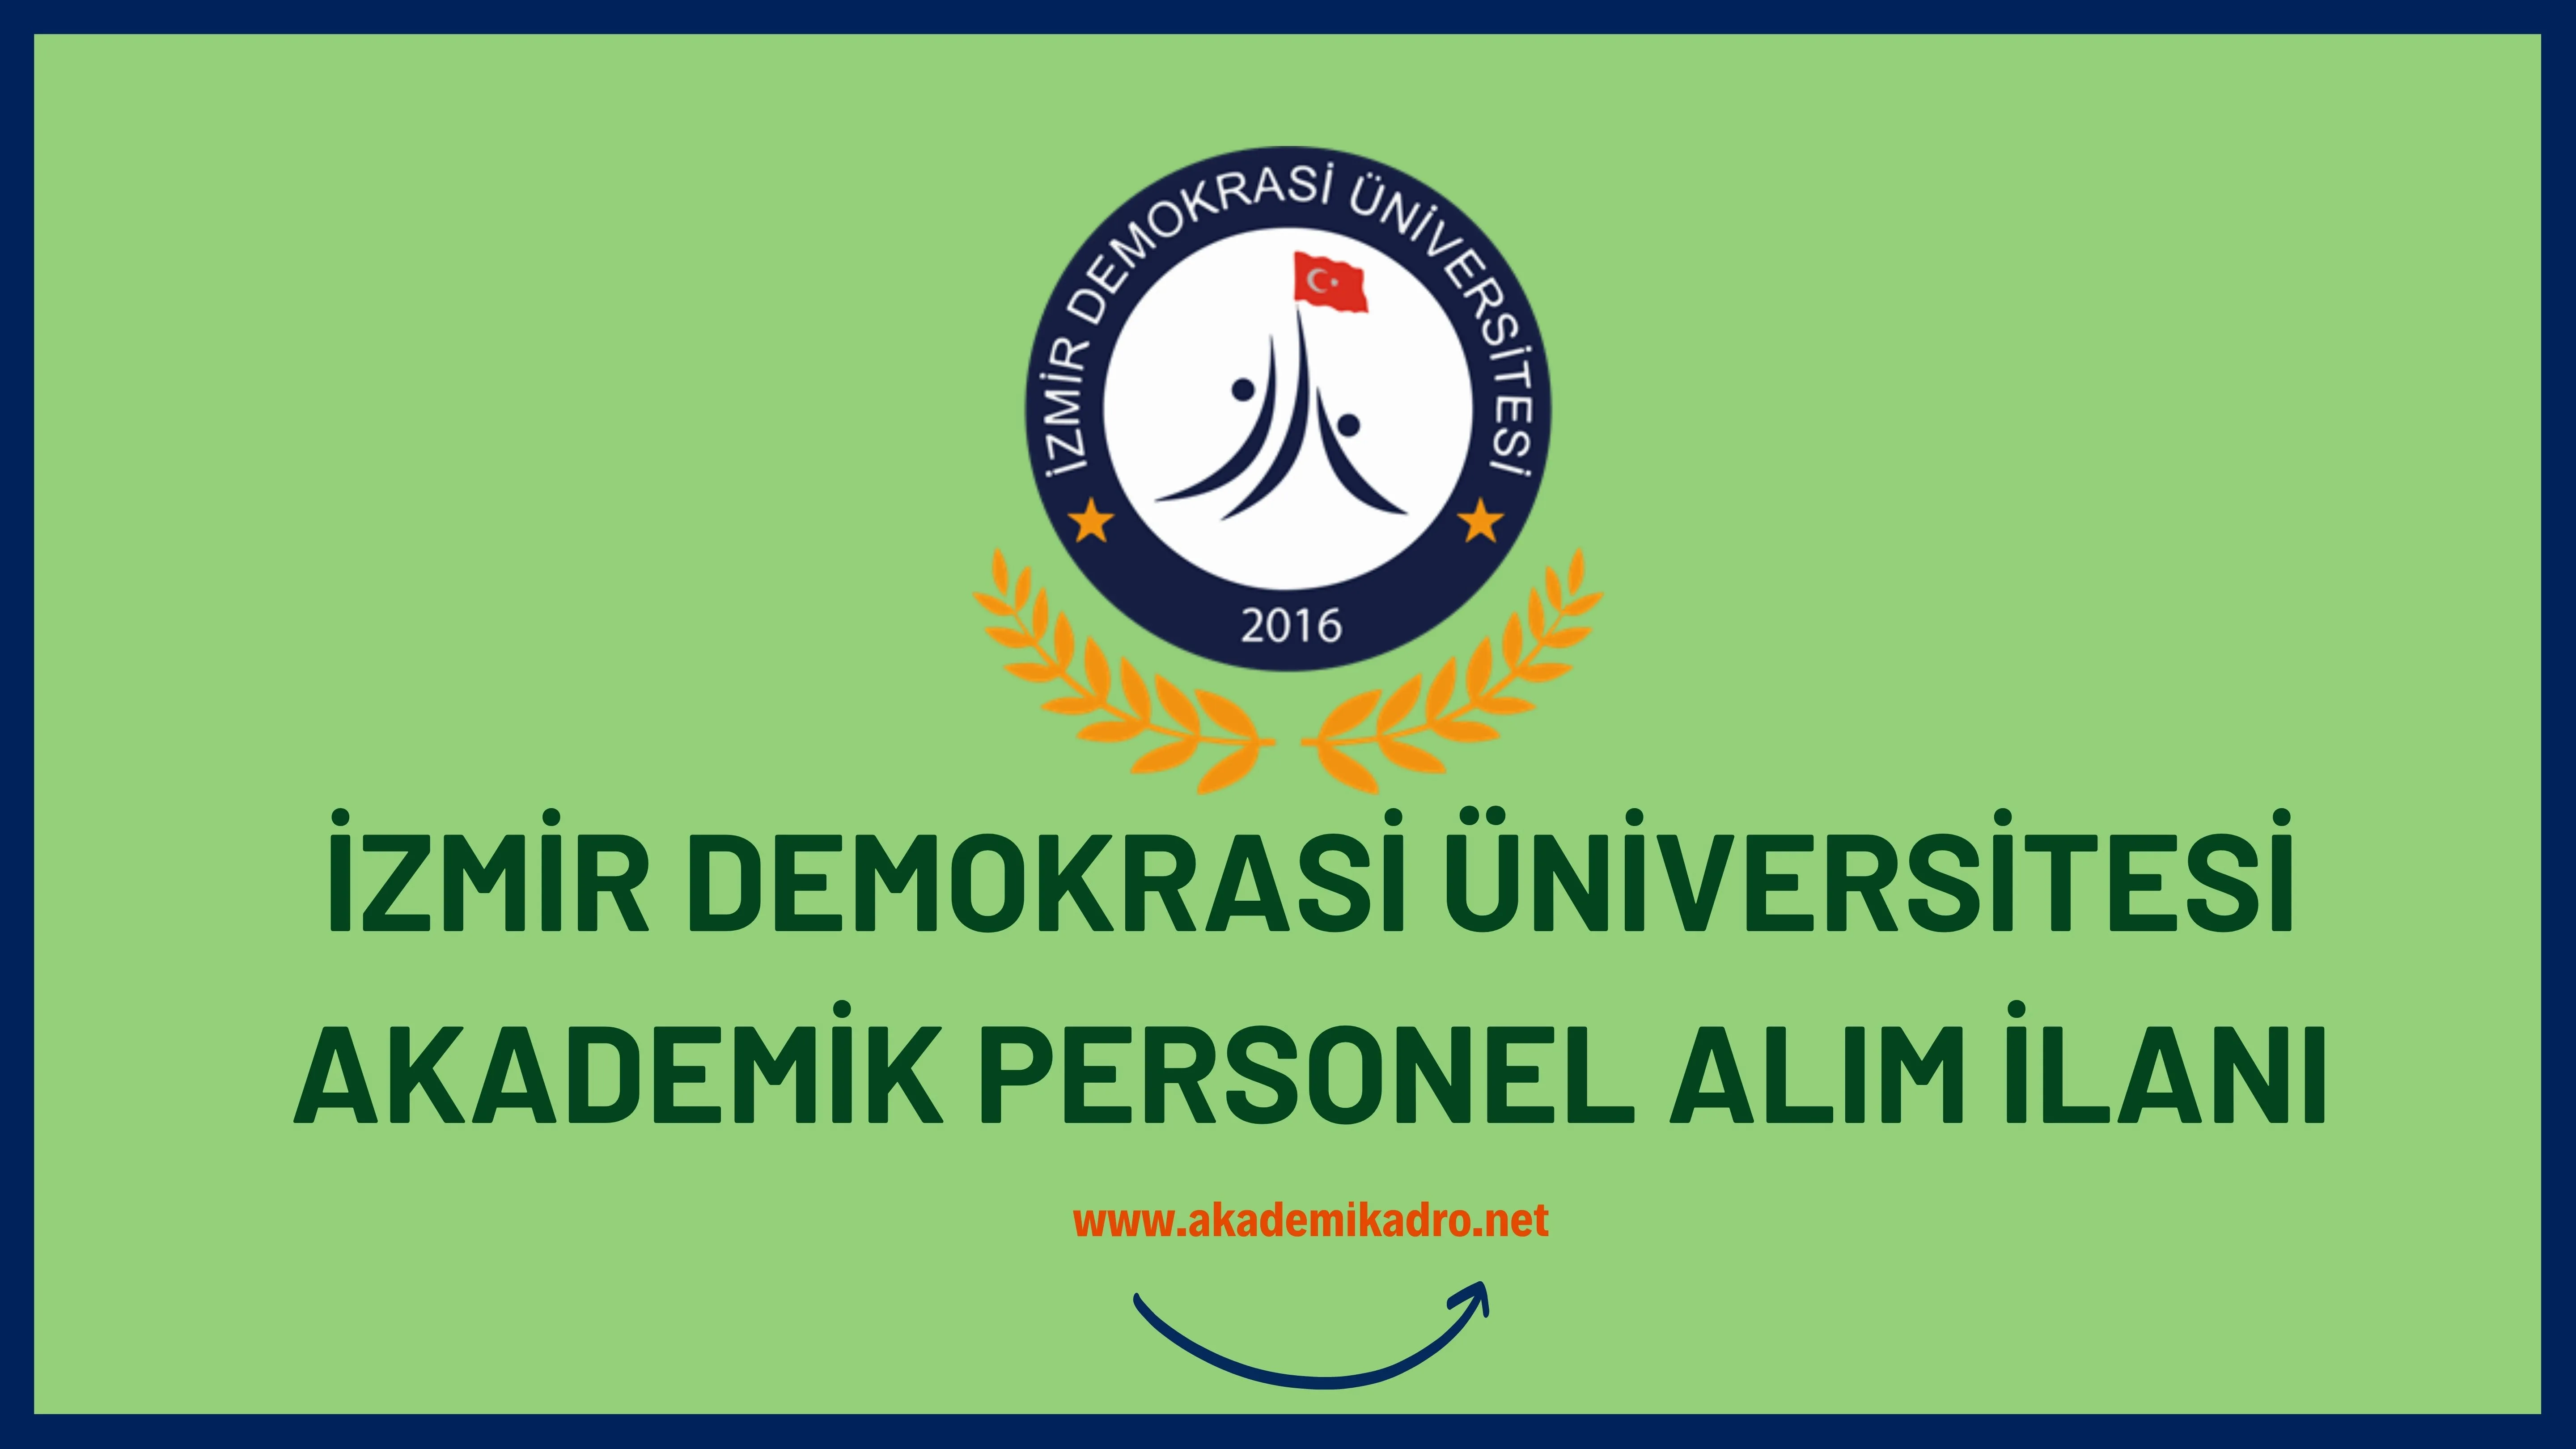 İzmir Demokrasi Üniversitesi birçok alandan 22 Öğretim üyesi alacak. Son başvuru tarihi 16 Aralık 2022.